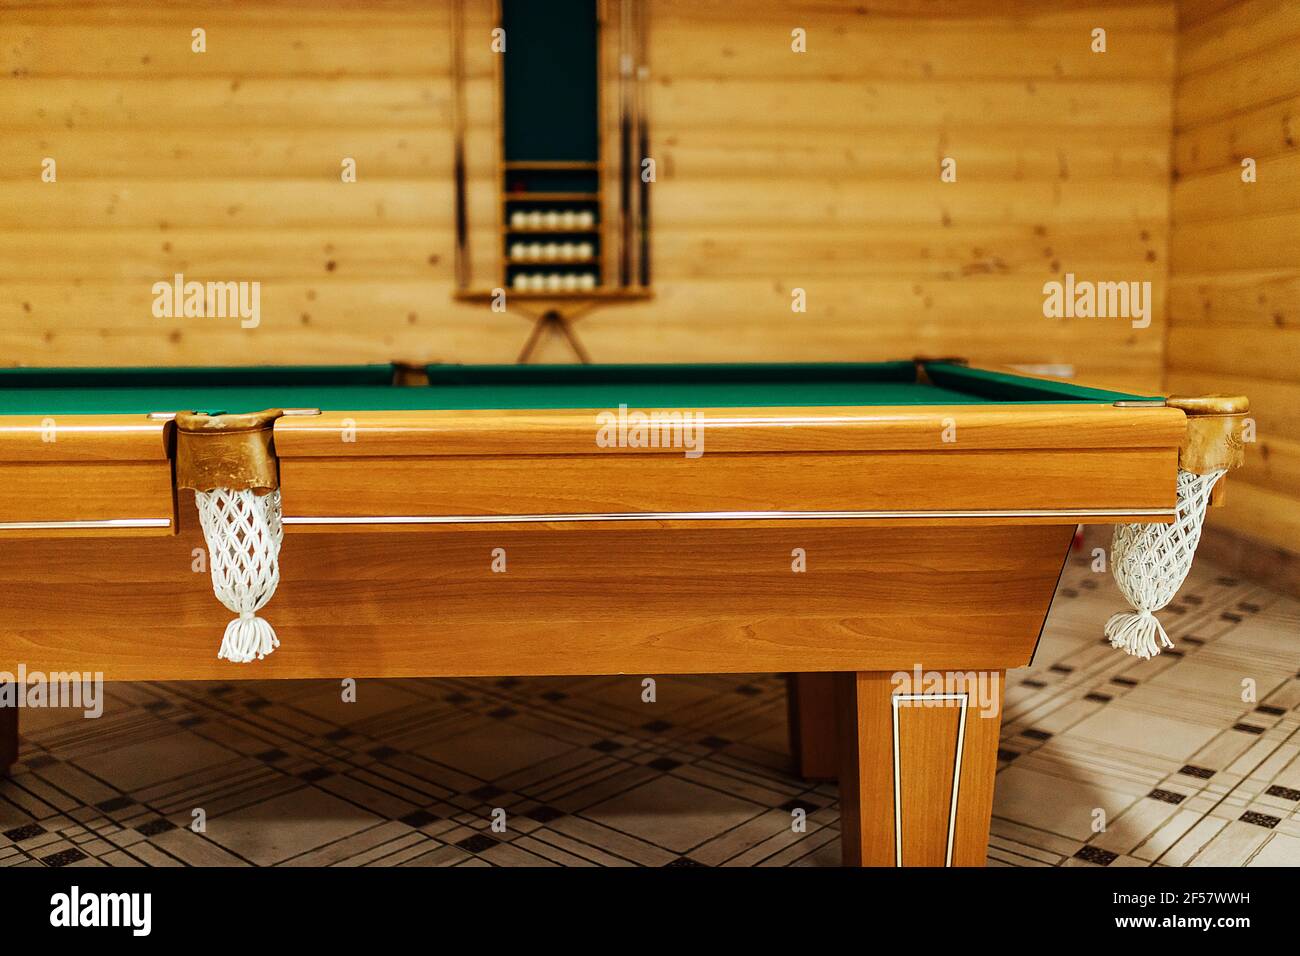 Billardtisch in der Sauna. Erholung und sportliche Unterhaltung Sport-Unterhaltung während Ihres Urlaubs. Holztisch mit grünen Tuch in einem privaten Hou Stockfoto